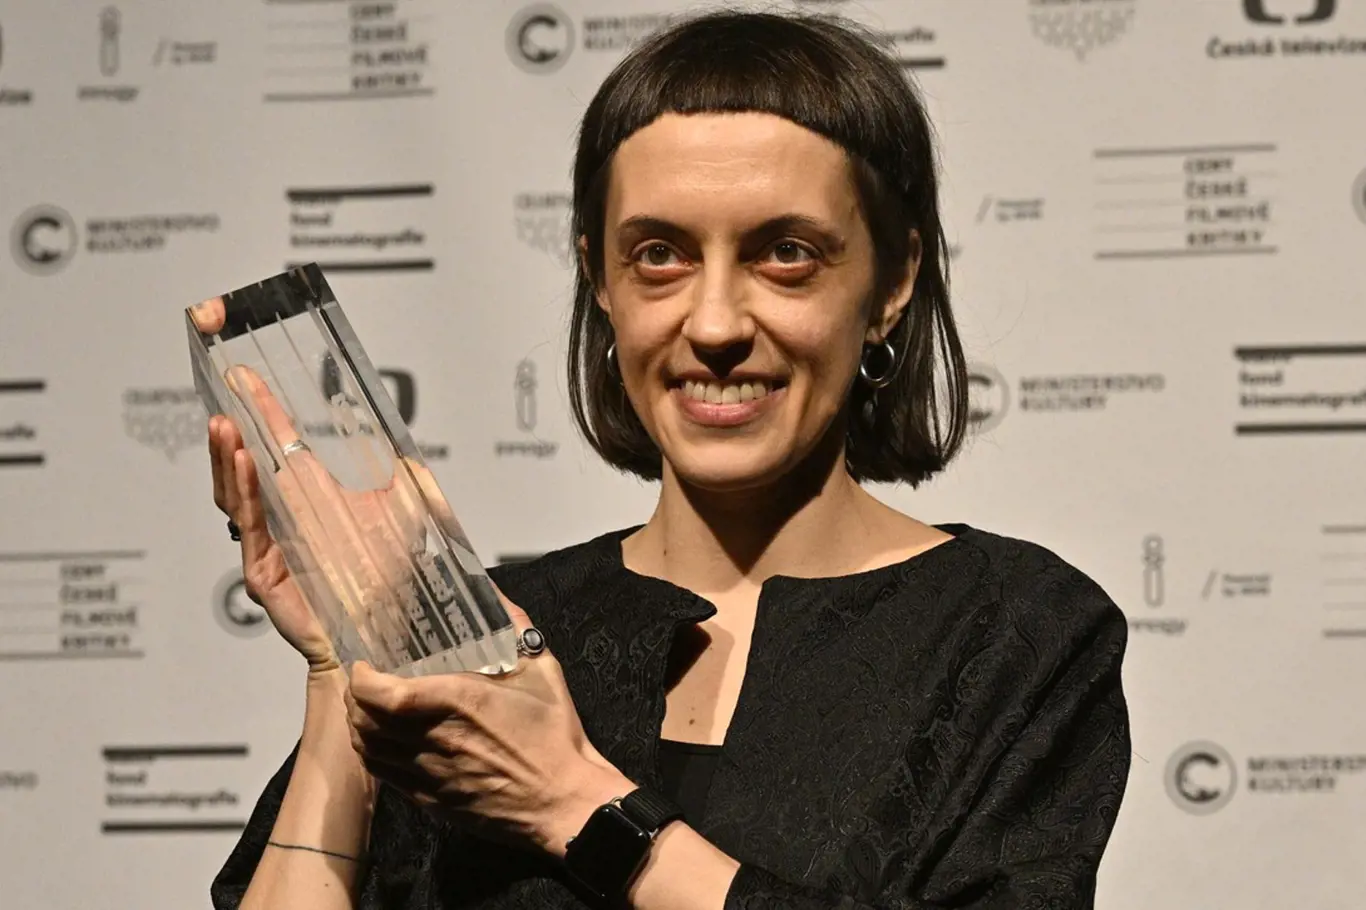 Režisérka Daria Kascheeva byla na Lvech nepříjemně přerušena při proslovu.